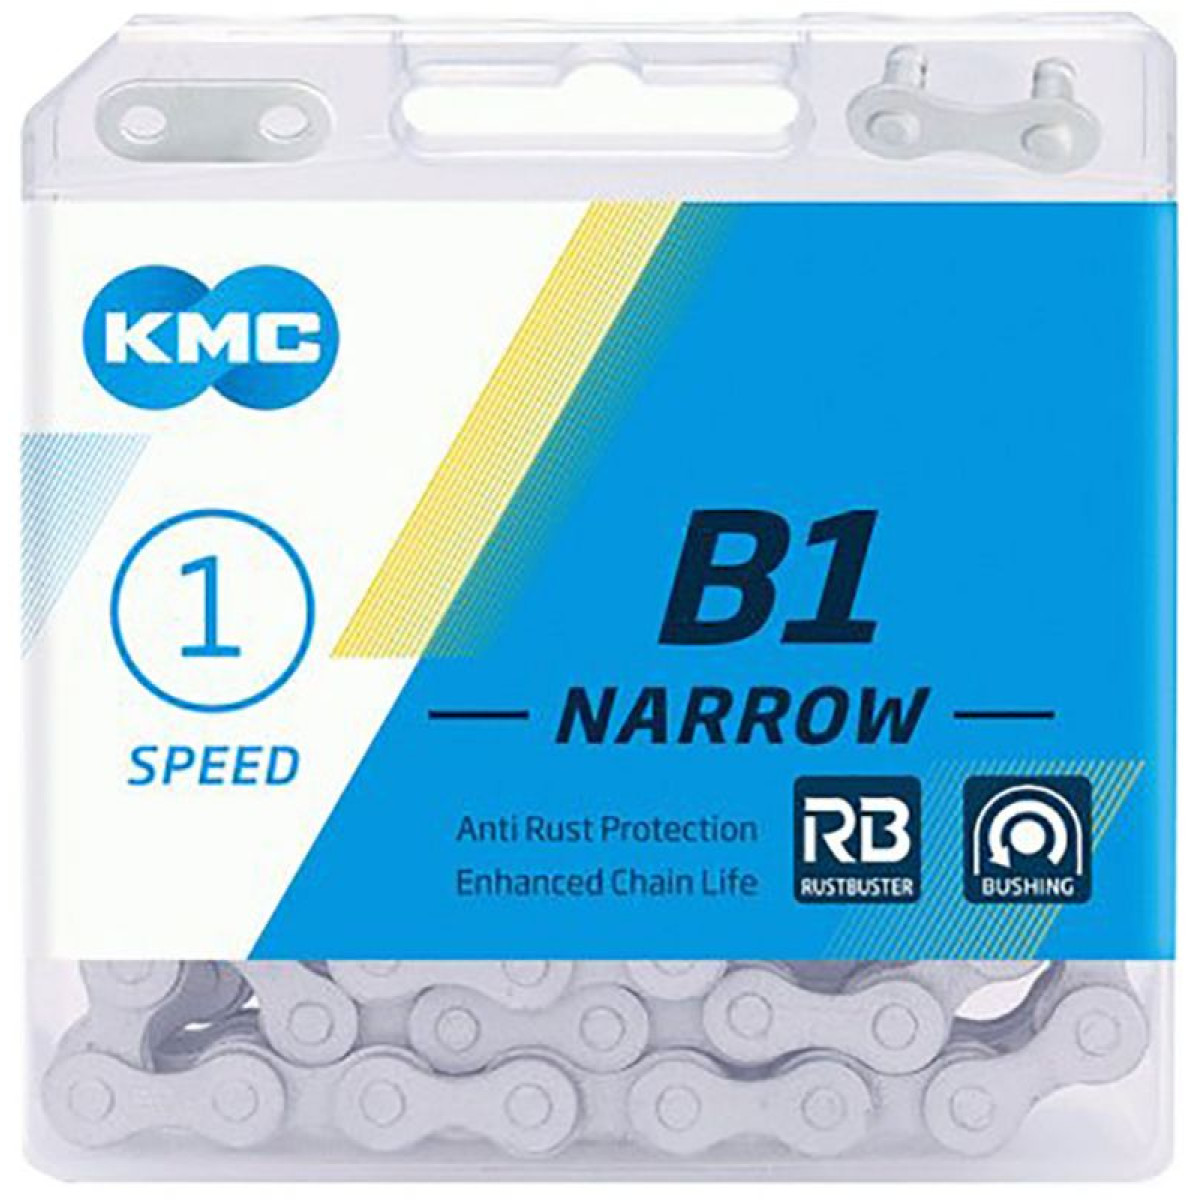 KMC B1 Narrow RB grandinė / 1 pavaros / Matt Silver